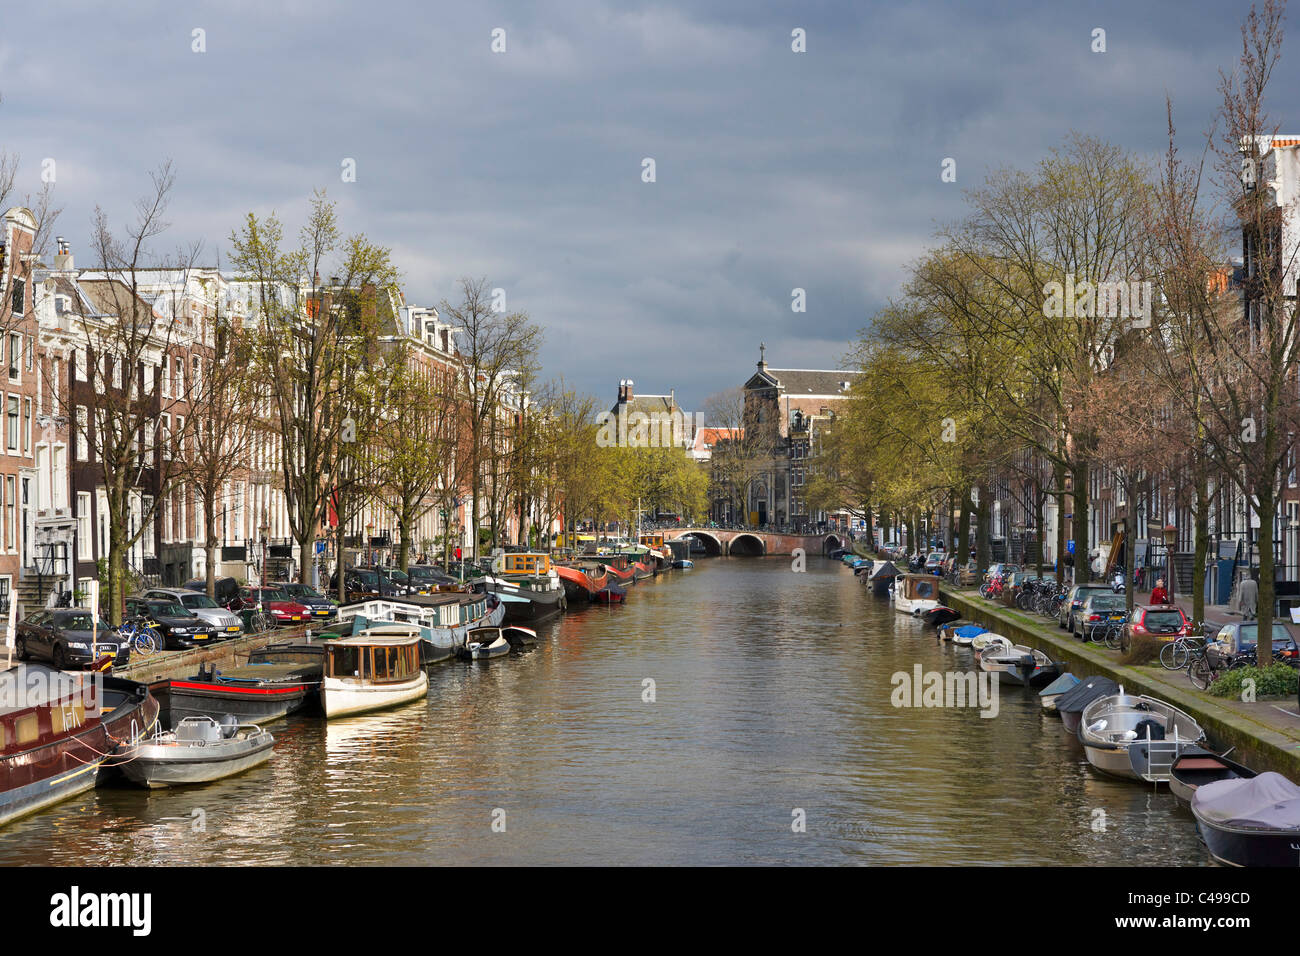 Casas y barcos en un canal a principios de la primavera o a finales del invierno, Prinsengracht, sur Grachtengordel, Amsterdam, Países Bajos Foto de stock